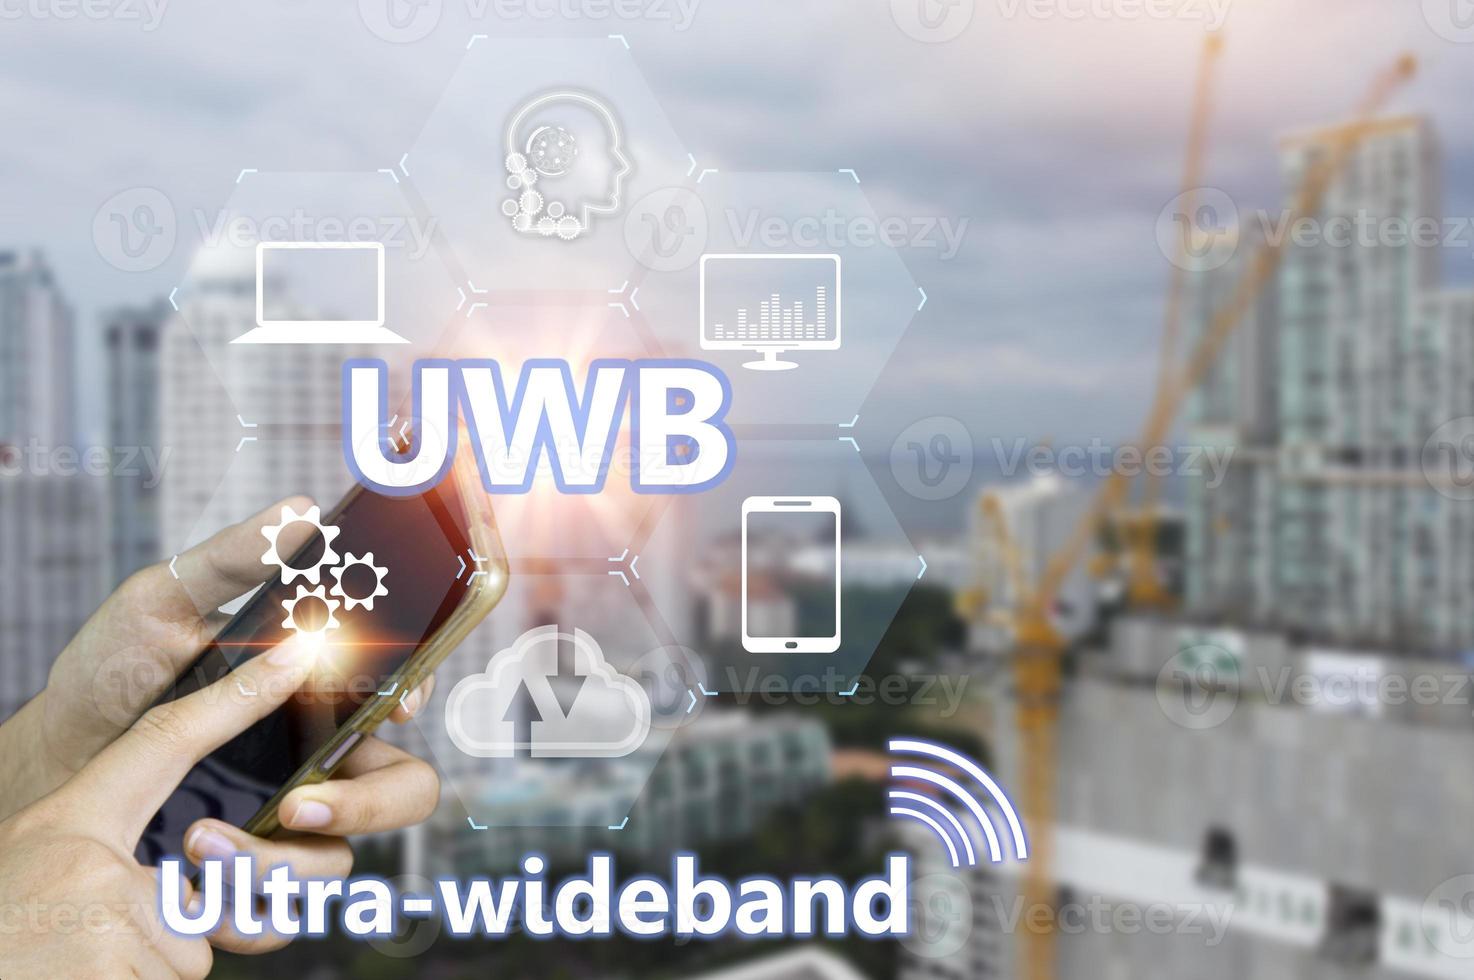 ultra banda ancha uwb es un corto alcance radio comunicación tecnología en anchos de banda de 500MHz o mayor y a muy alto frecuencias en general, eso trabajos similar a Bluetooth y Wifi foto